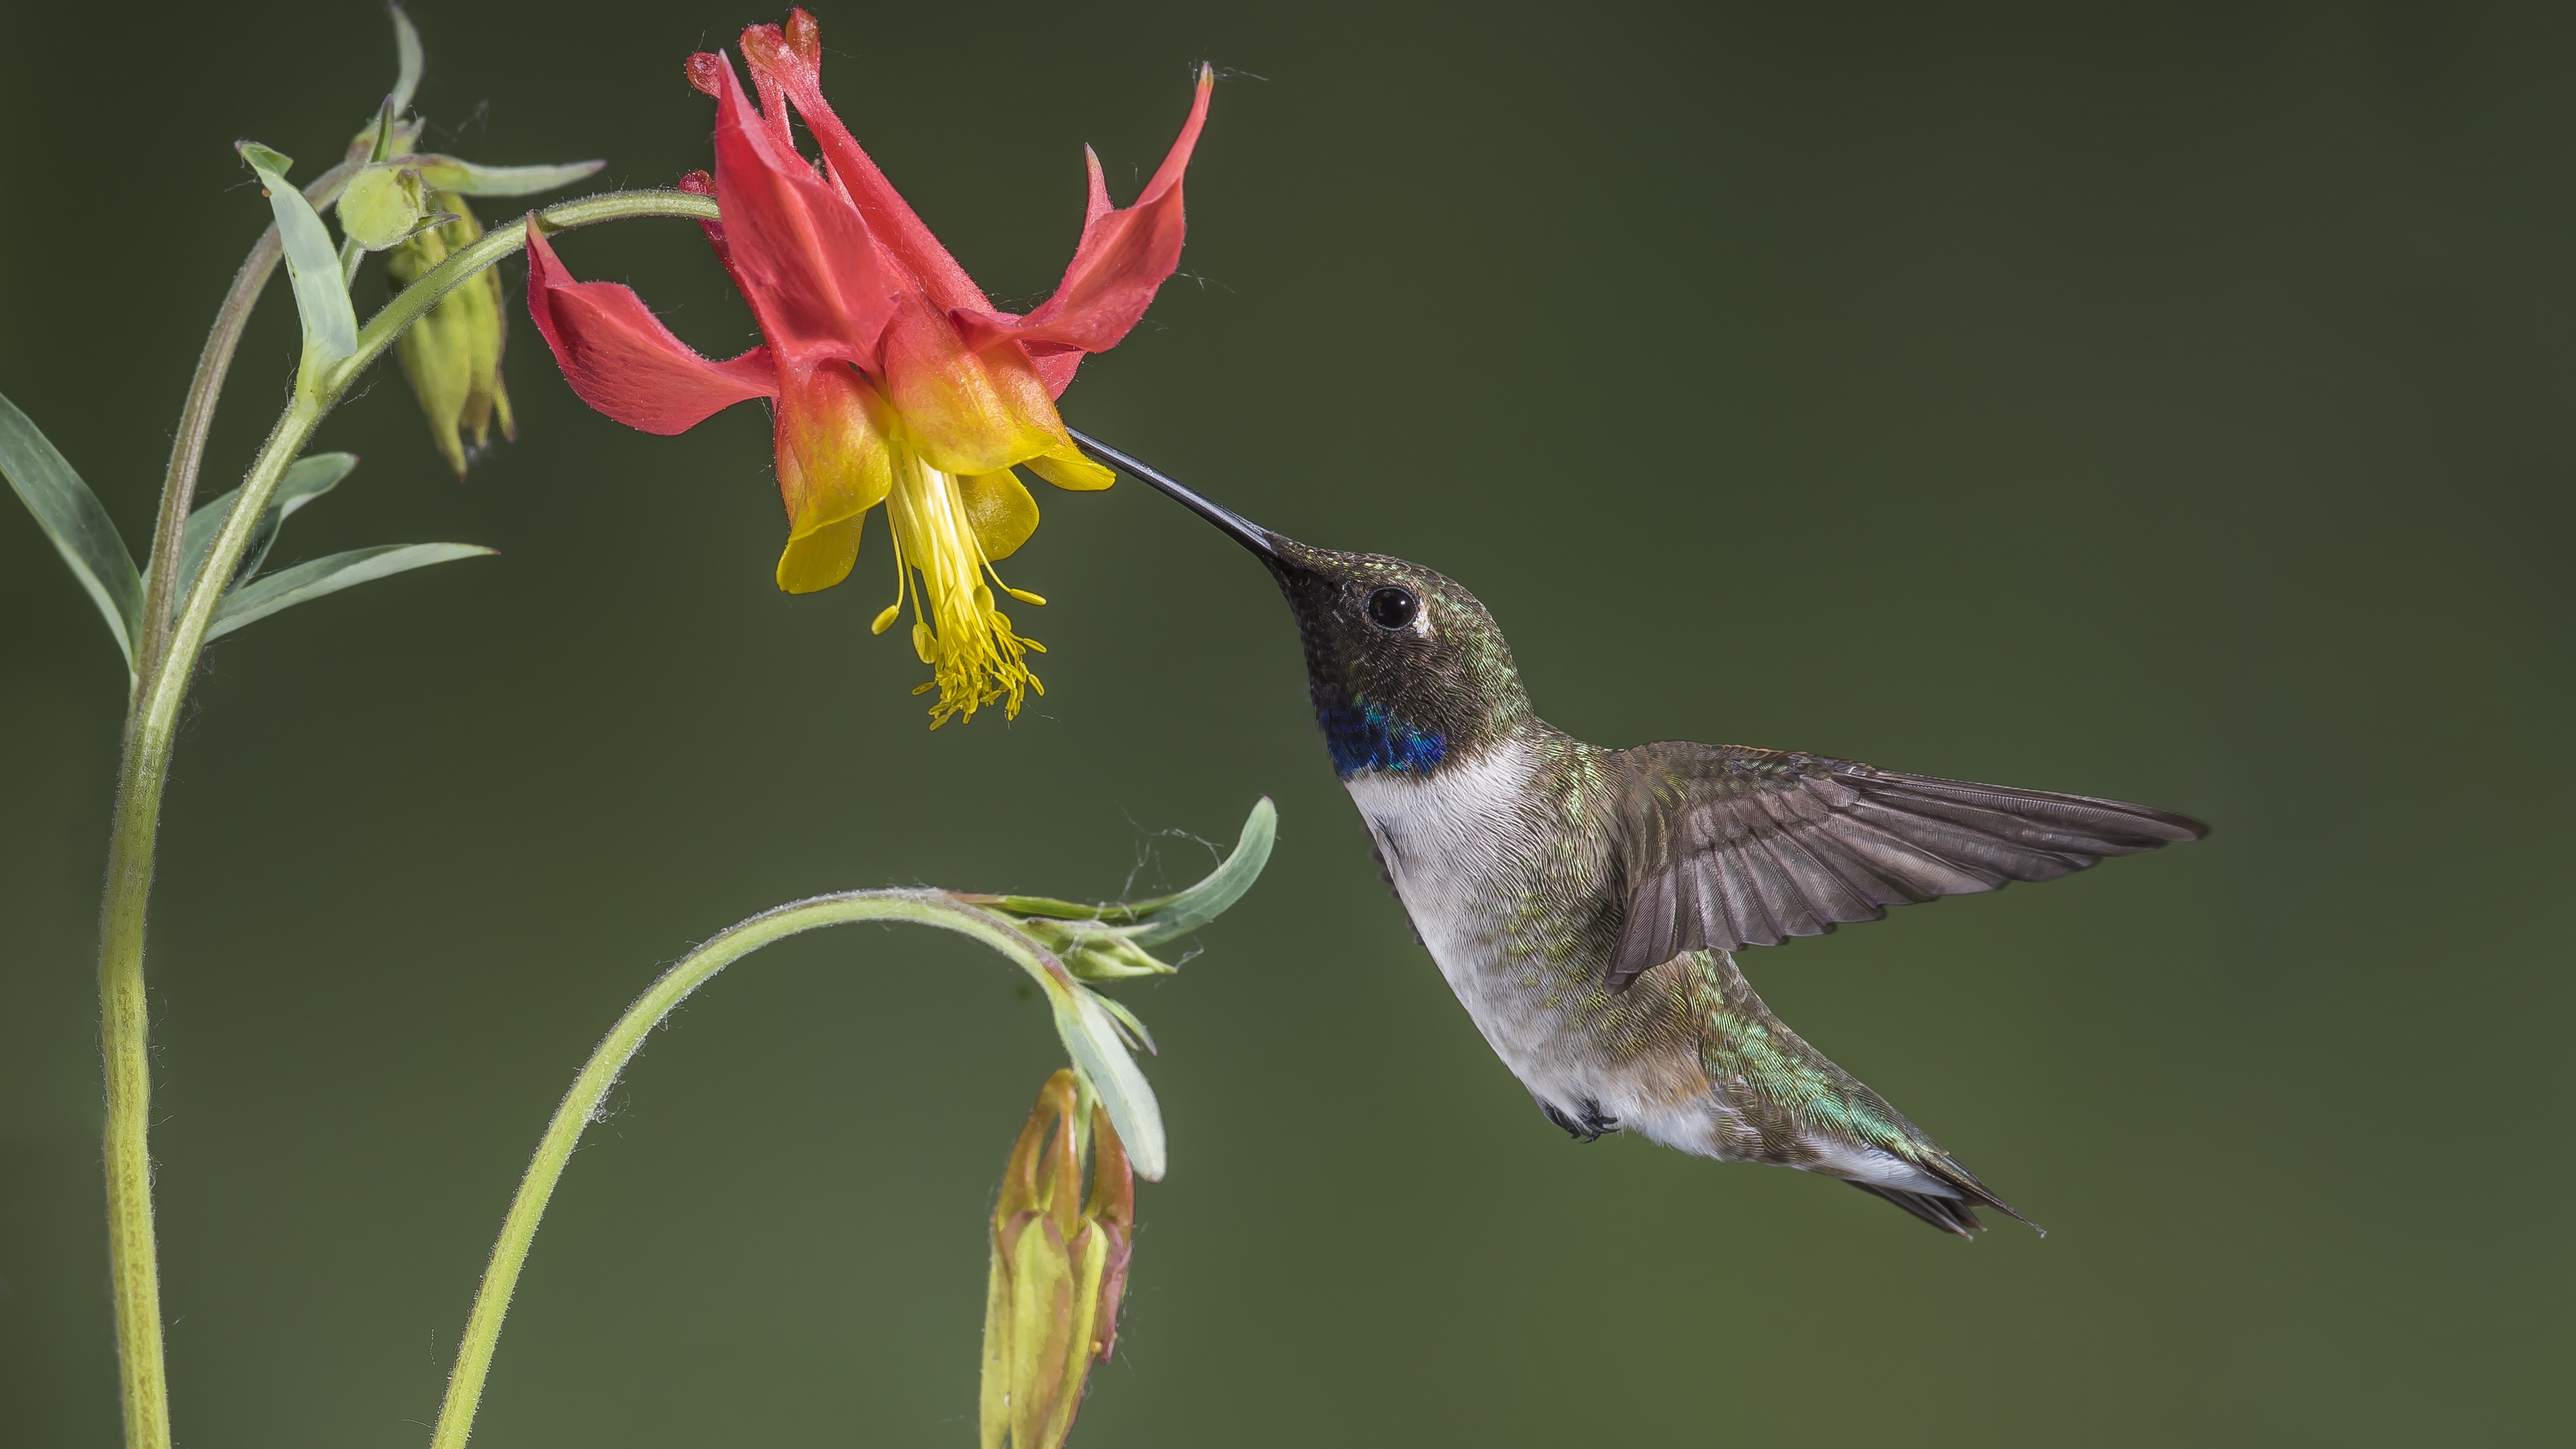 Колибри кушает нектар из цветка с помощью длинного клюва